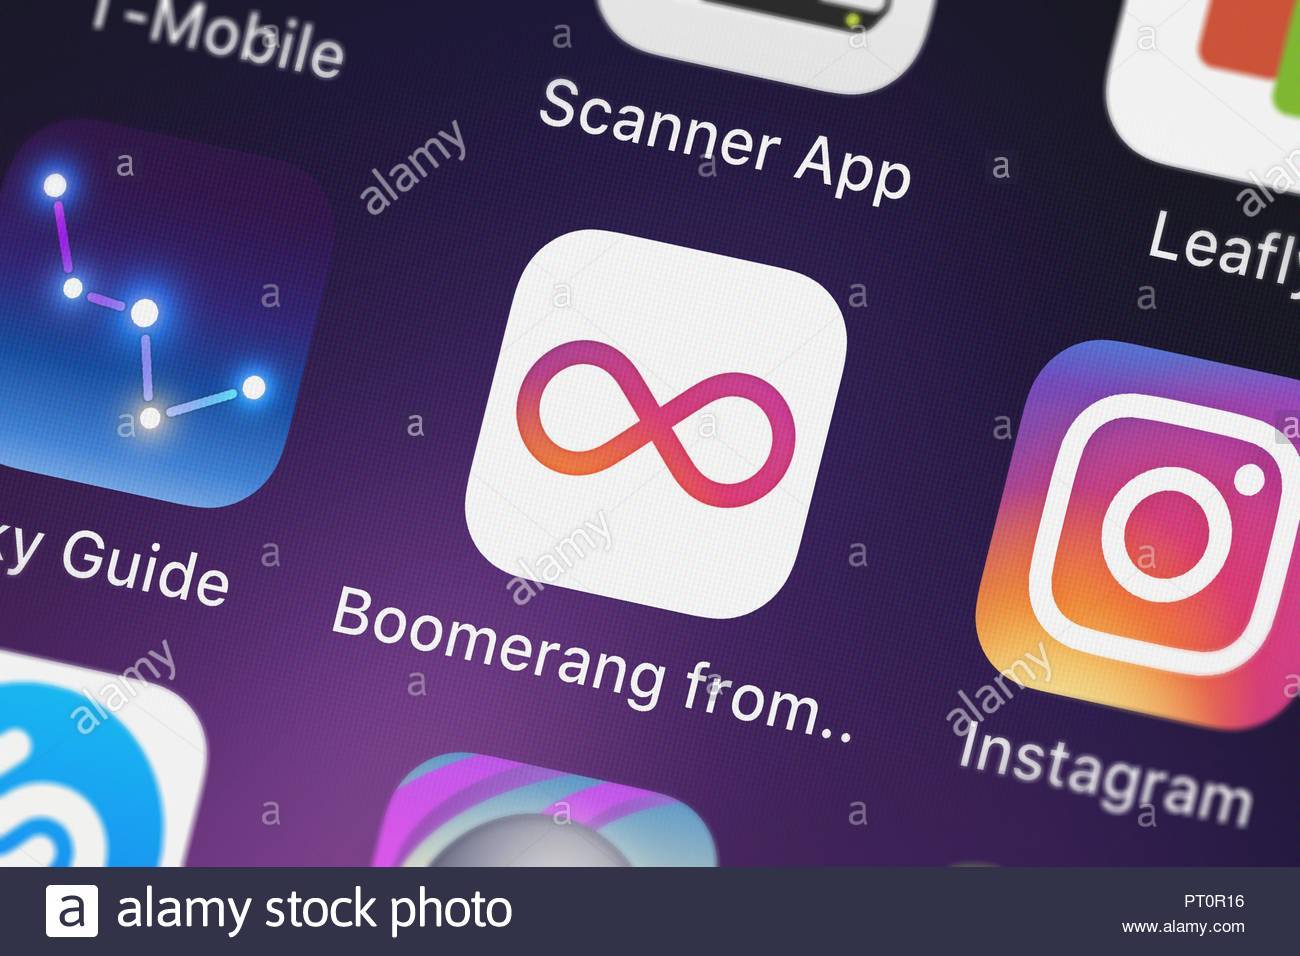 Boomerang: как скачать, принцип работы приложения, другие способы эффекта